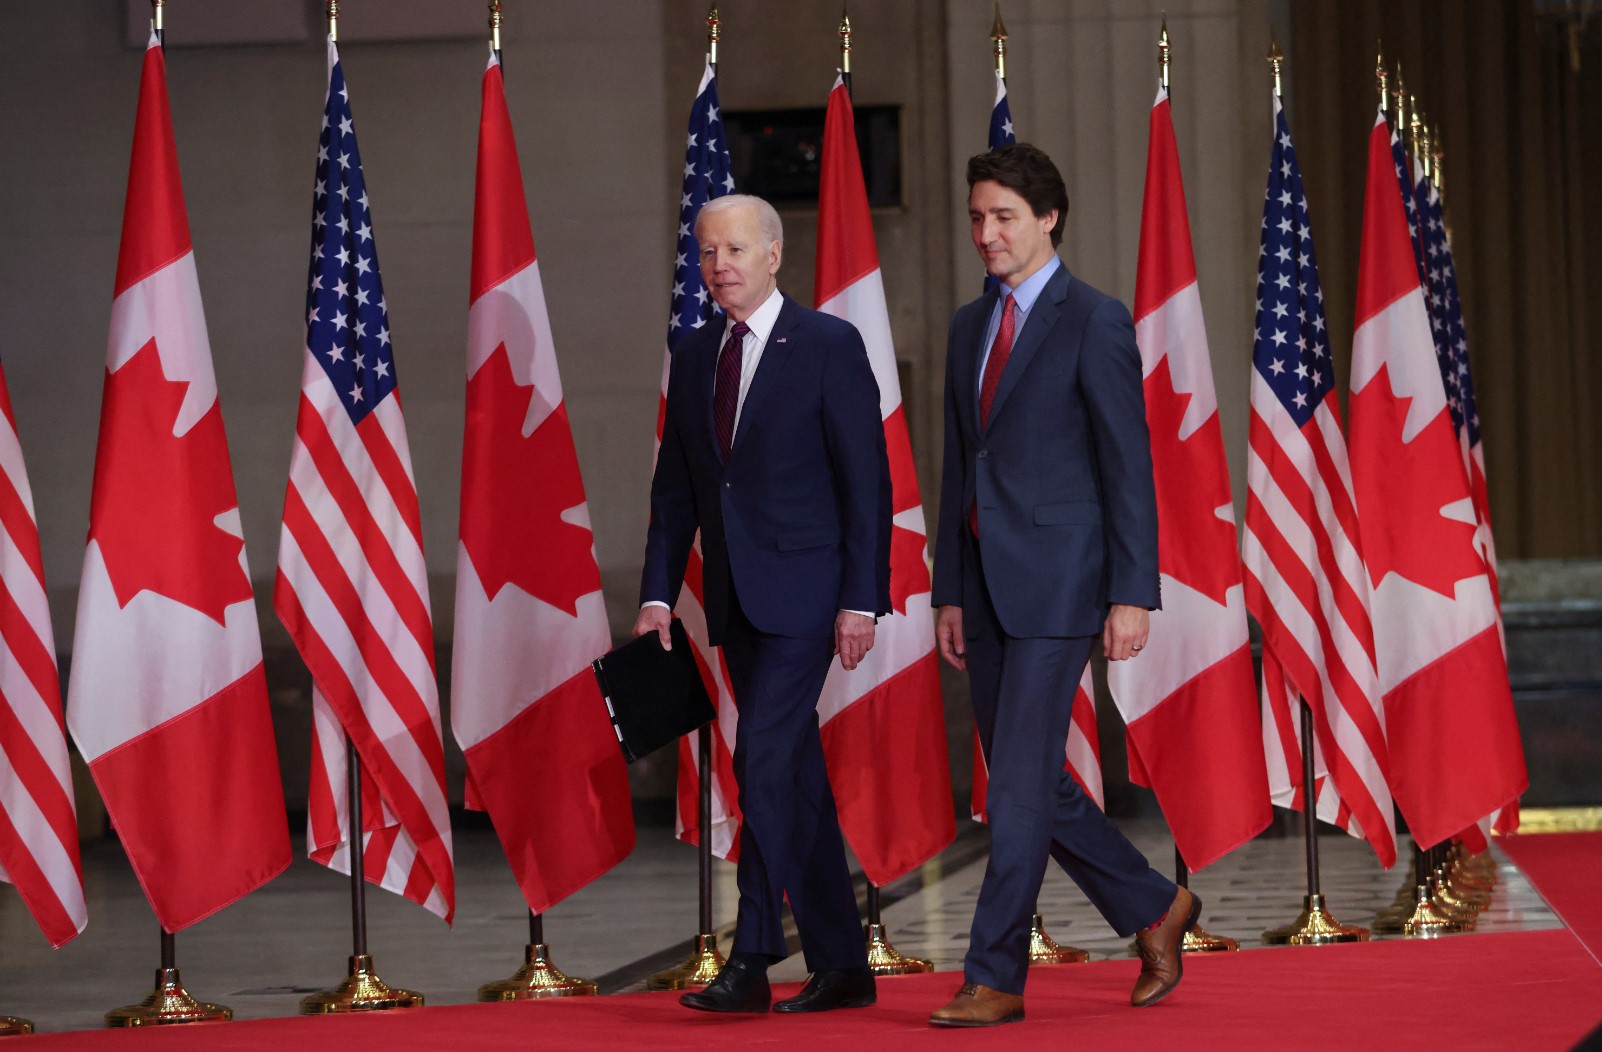 САЩ и Канада обявиха споразумение за борба срещу нелегалната миграция